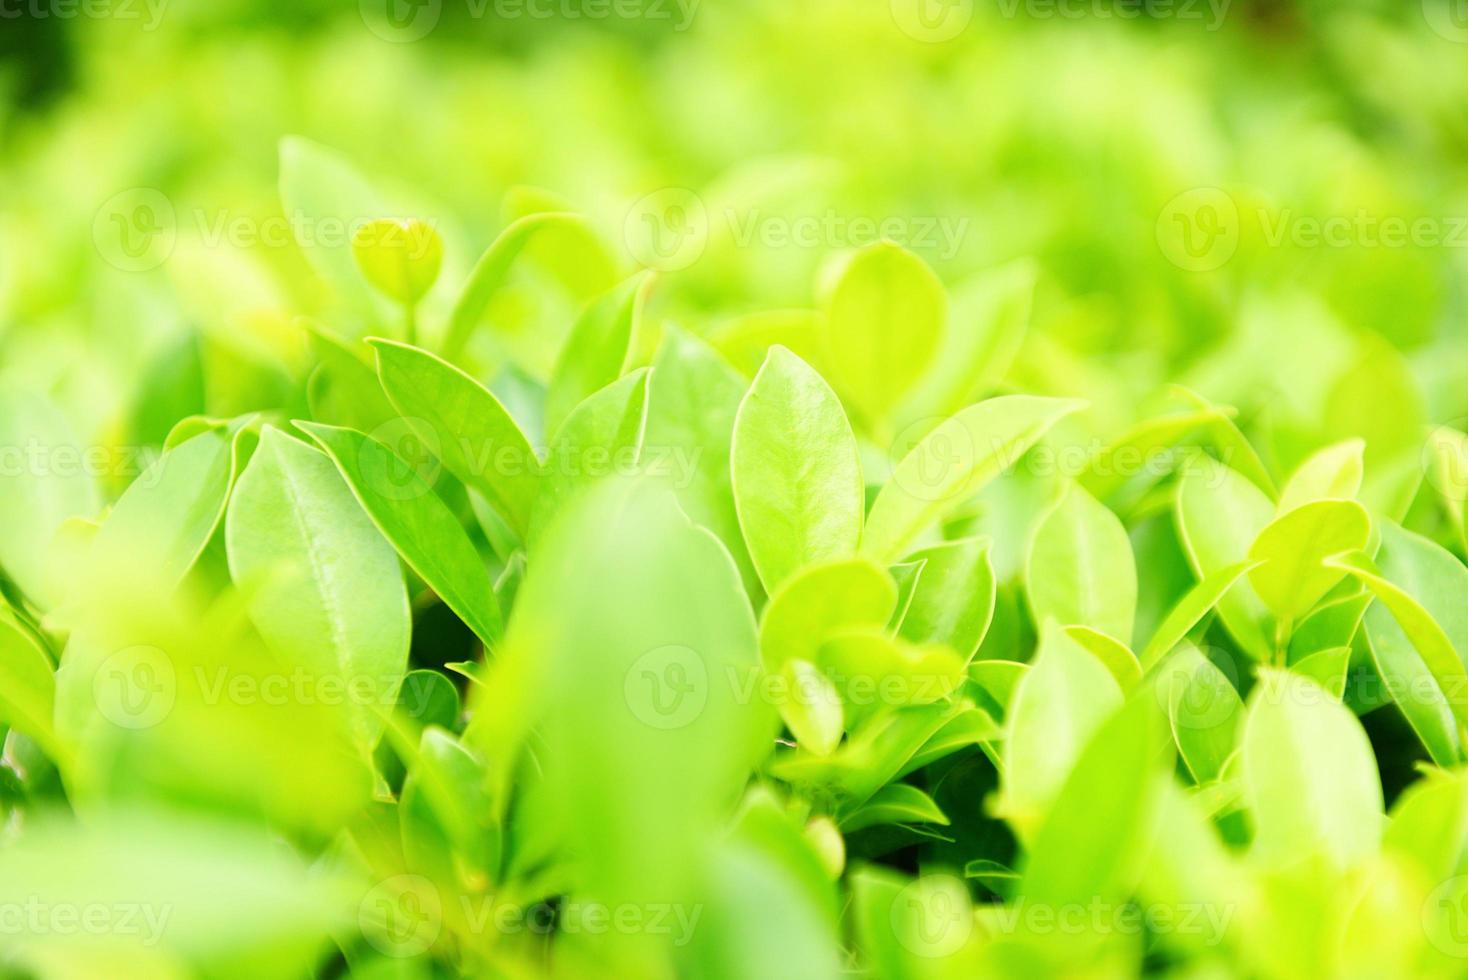 plantas verdes paisagem ecologia conceito de papel de parede fresco - closeup natureza vista de folha verde no fundo verde borrado no jardim natural foto